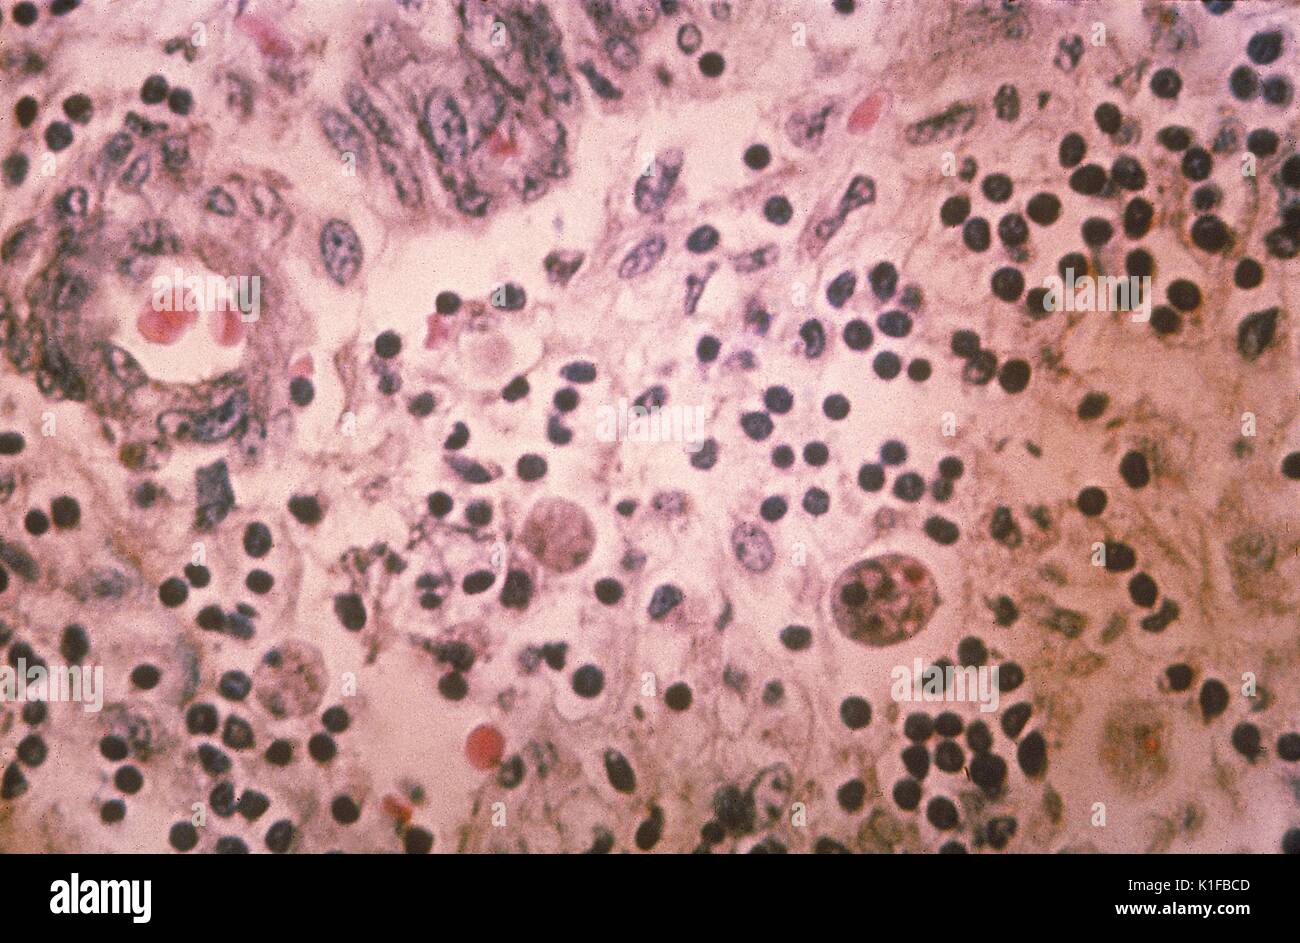 Histopathology of amebiasis. Parasite, ameba. Image courtesy CDC, 1962. Stock Photo